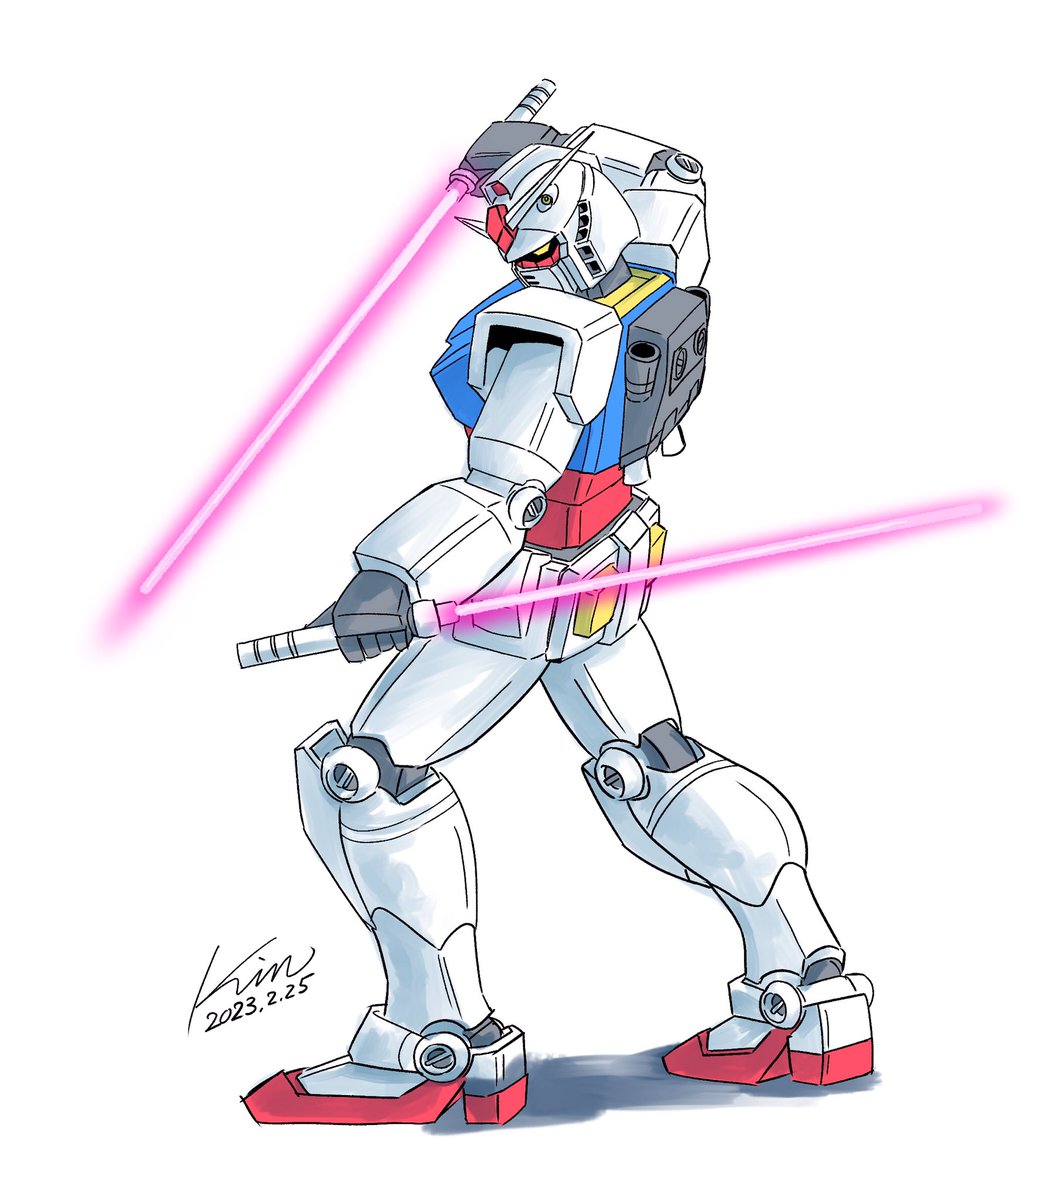 rx-78-2 beam saber no humans robot weapon v-fin mecha energy sword  illustration images